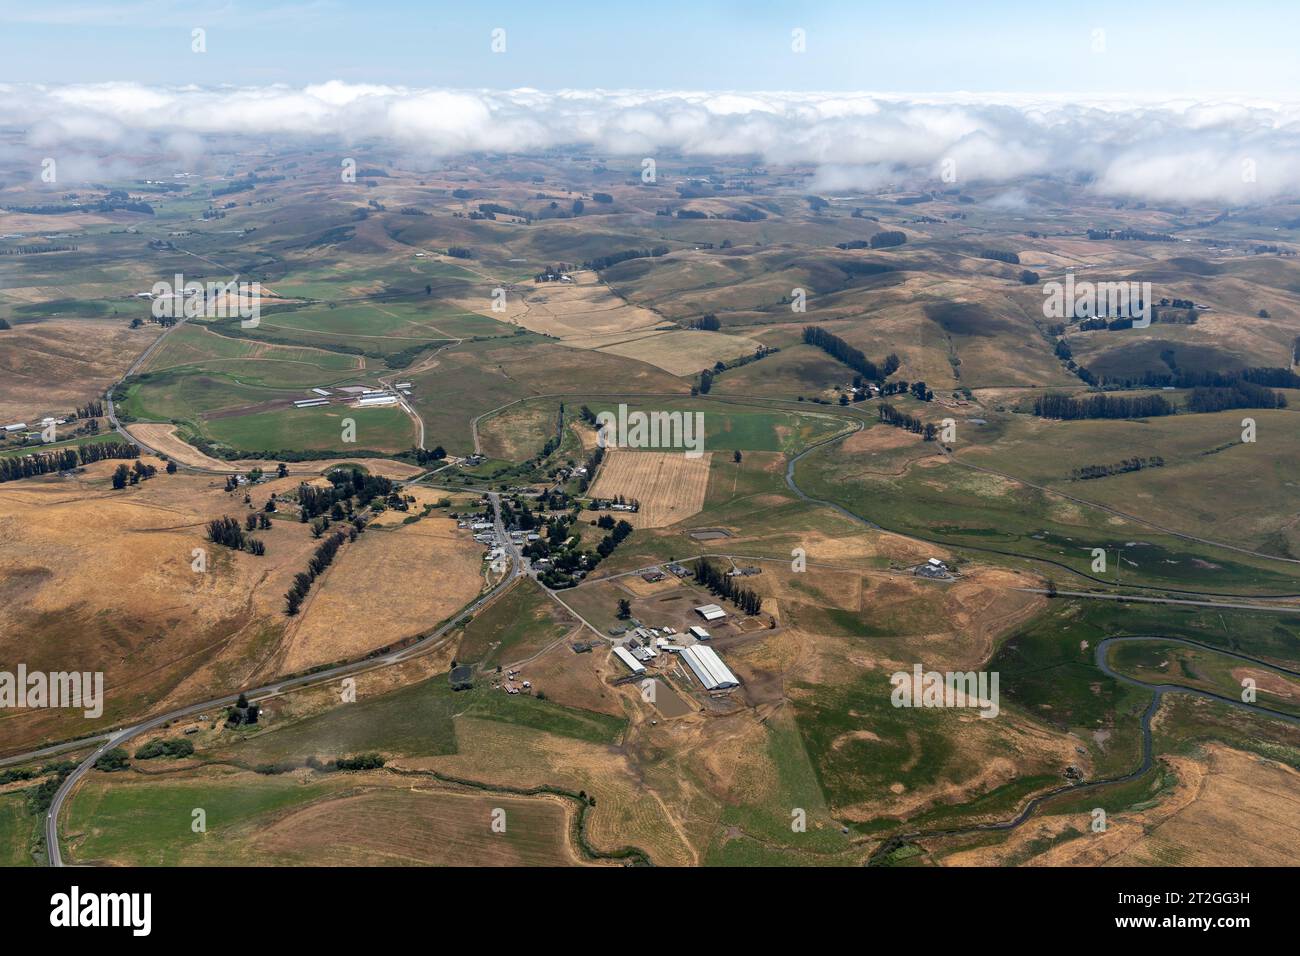 Le nuvole si innalzano sulle dolci colline della regione vinicola con vista aerea delle fattorie e dei vigneti sottostanti Foto Stock